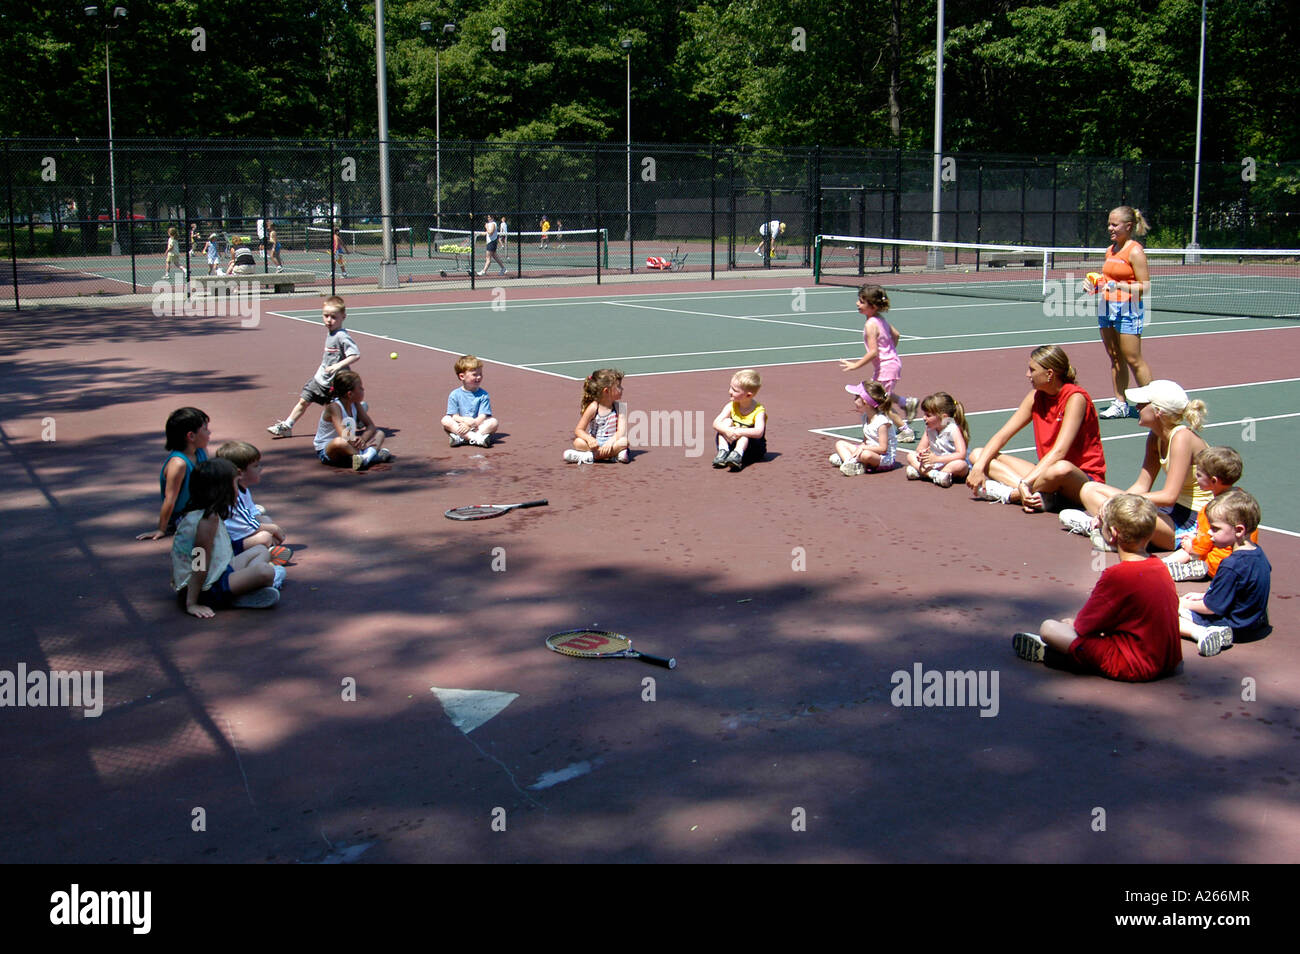 Les leçons de tennis sont fournis par une municipalité locale pour aider les enfants à apprendre la partie de tennis Banque D'Images